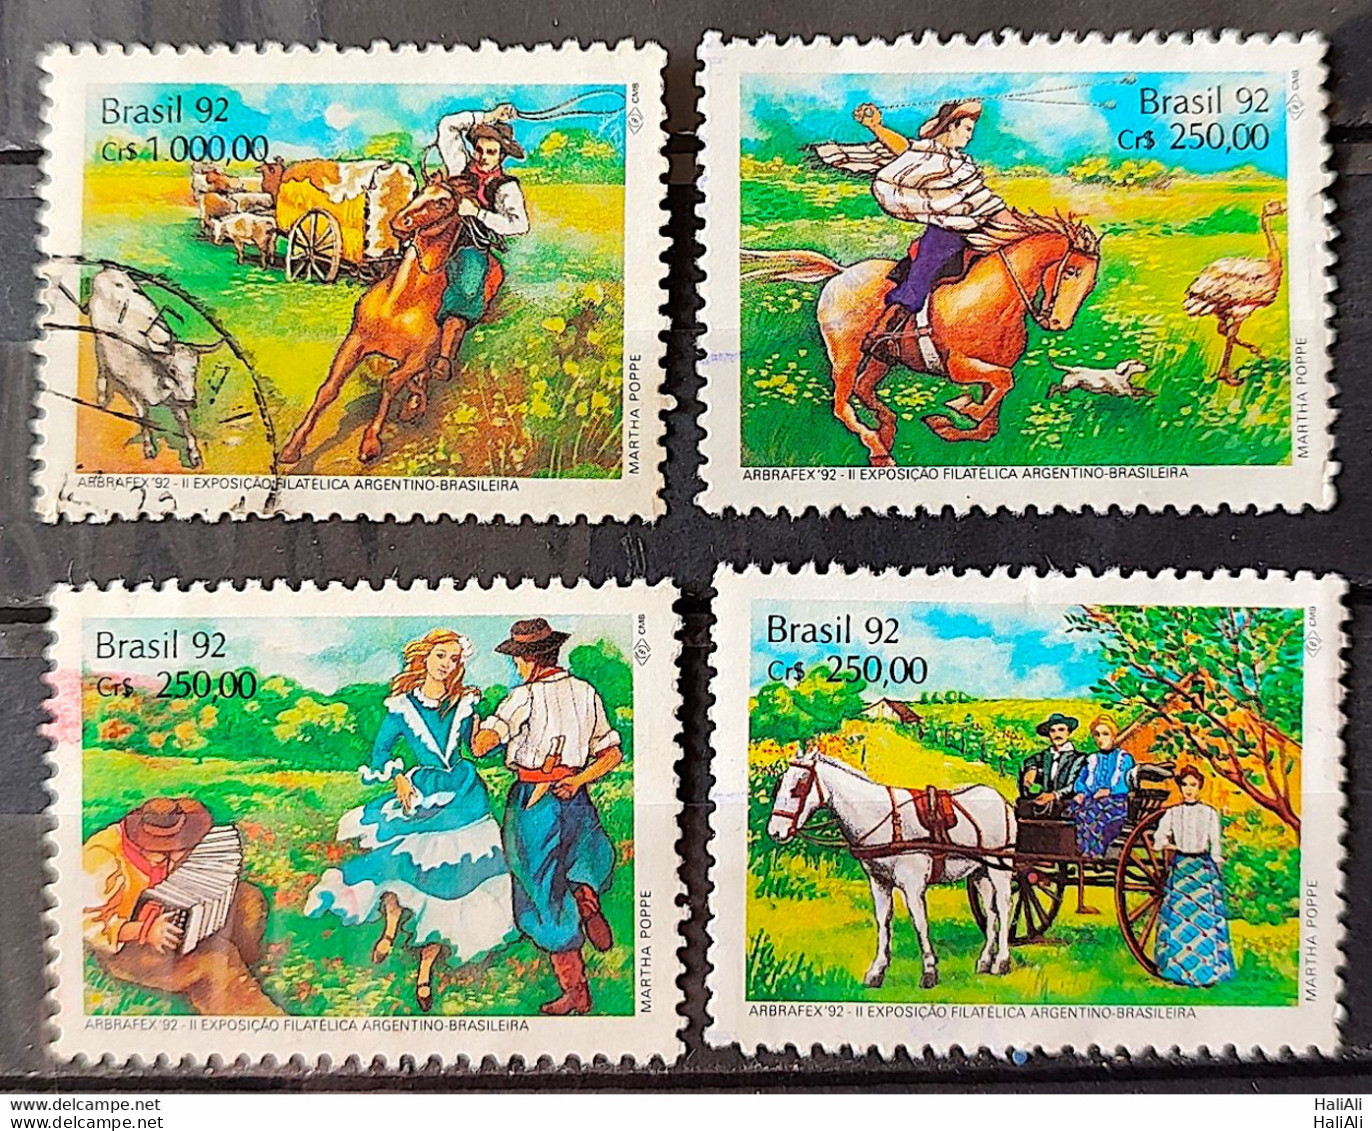 C 1778 Brazil Stamp Arbrafex Argentina Costumes Gauchos Music Gaita 1992 Complete Series Circulated 4 - Usati